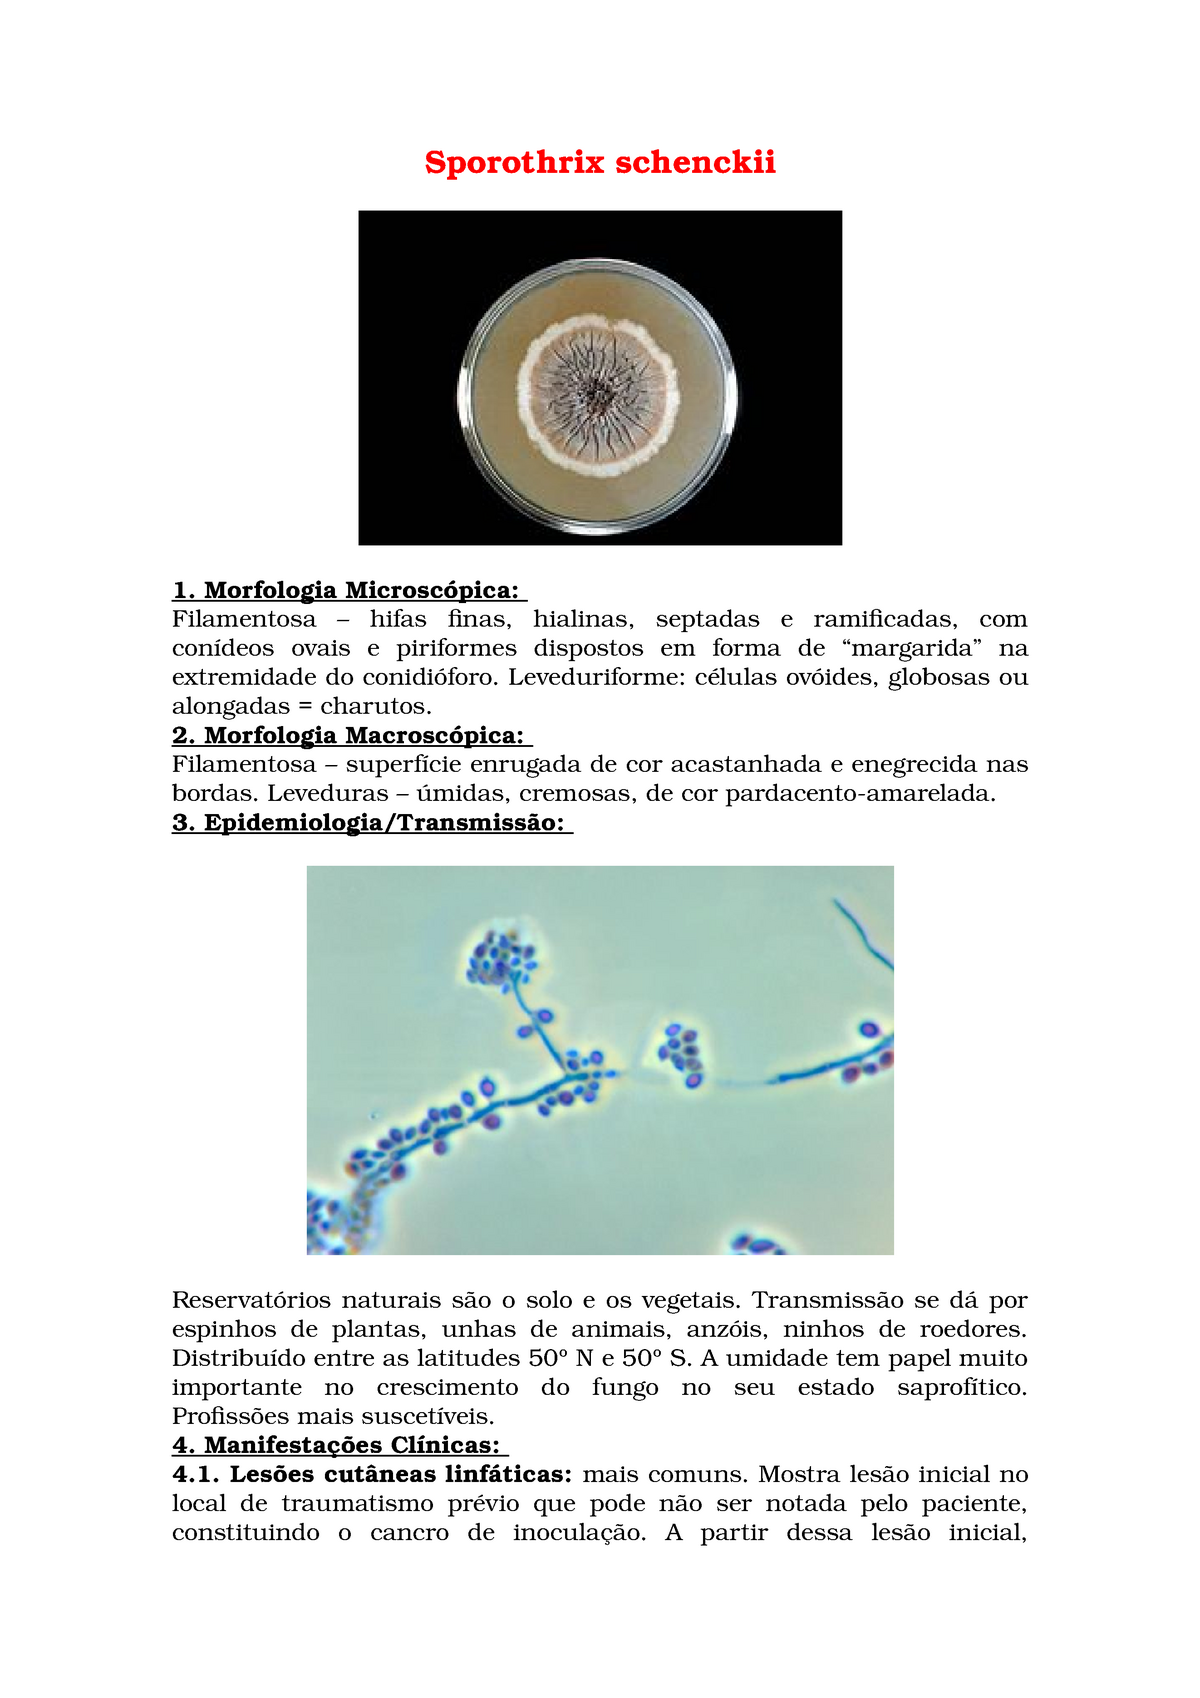 Sporothrix Schenckii Resumo Sobre Morfologia E Epidemiologia Da Bacteria Supracitada Studocu